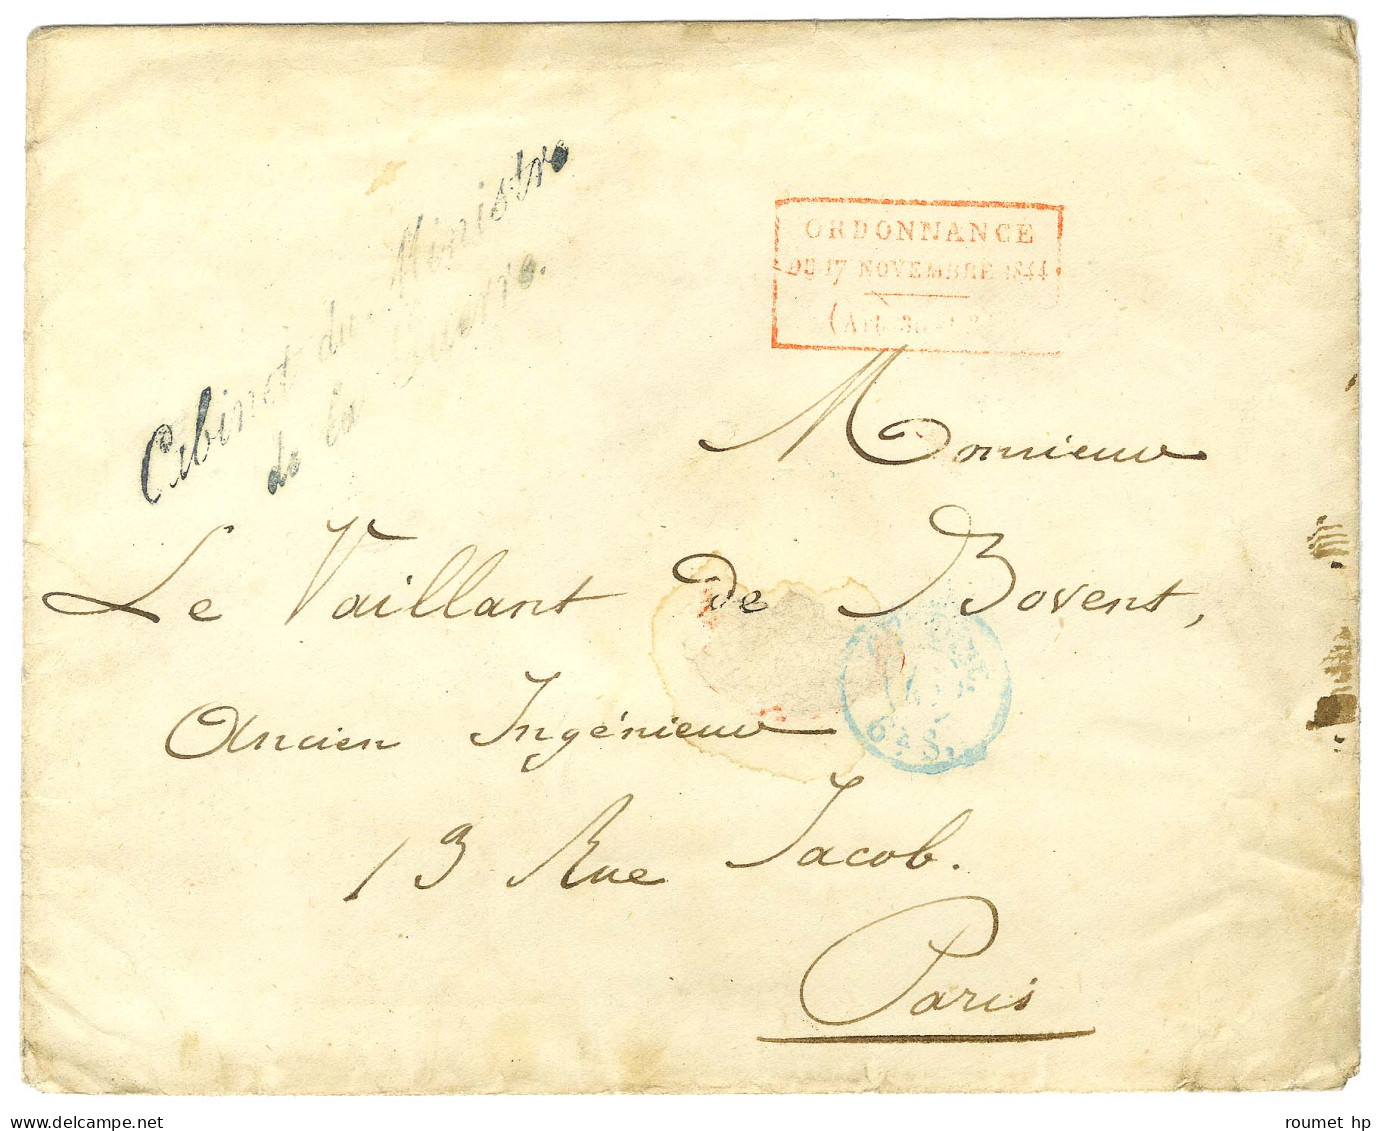 Enveloppe Sans Texte Datée 1825 Adressée à Paris. Au Recto, Cachet Rouge Encadrée De L'Ordonnance. - TB. - Cartas Civiles En Franquicia